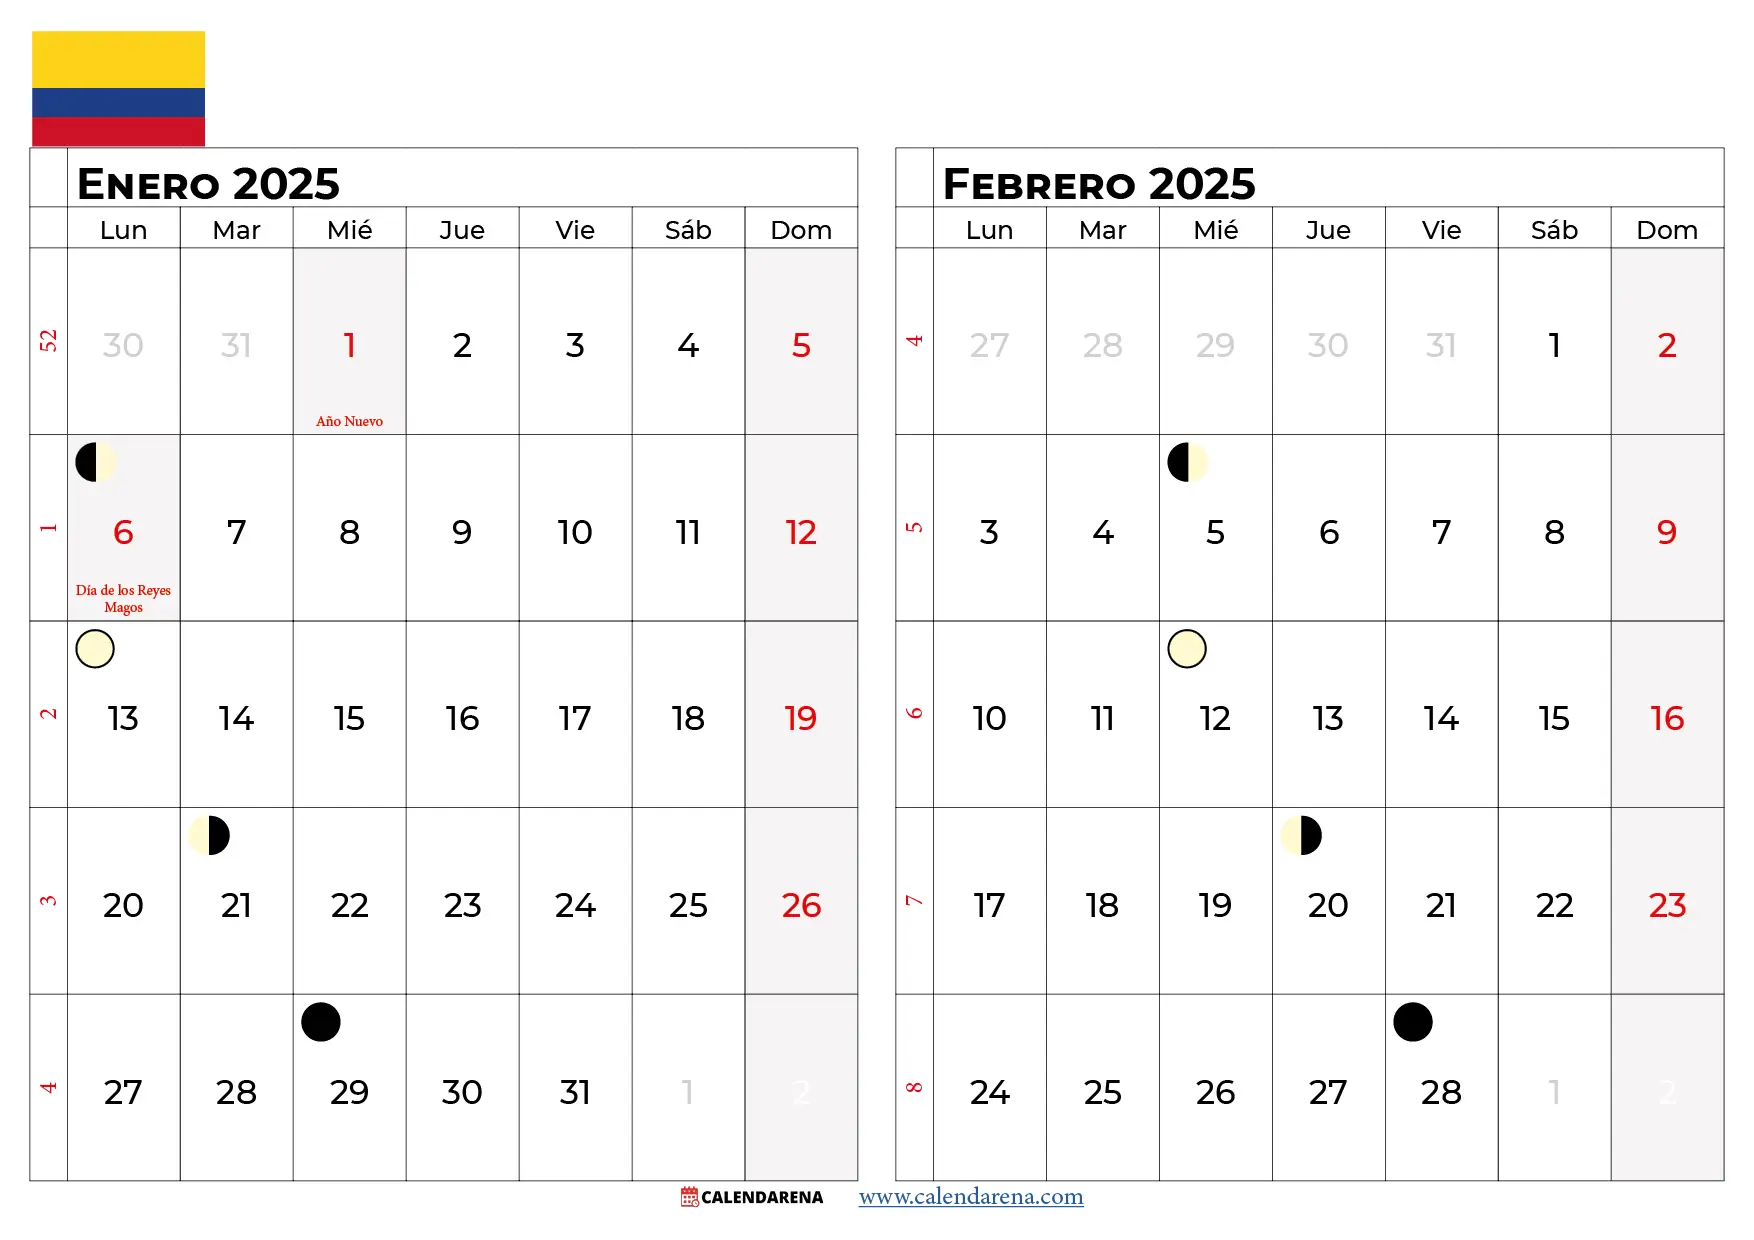 Calendario Enero y Febrero 2025 colombia